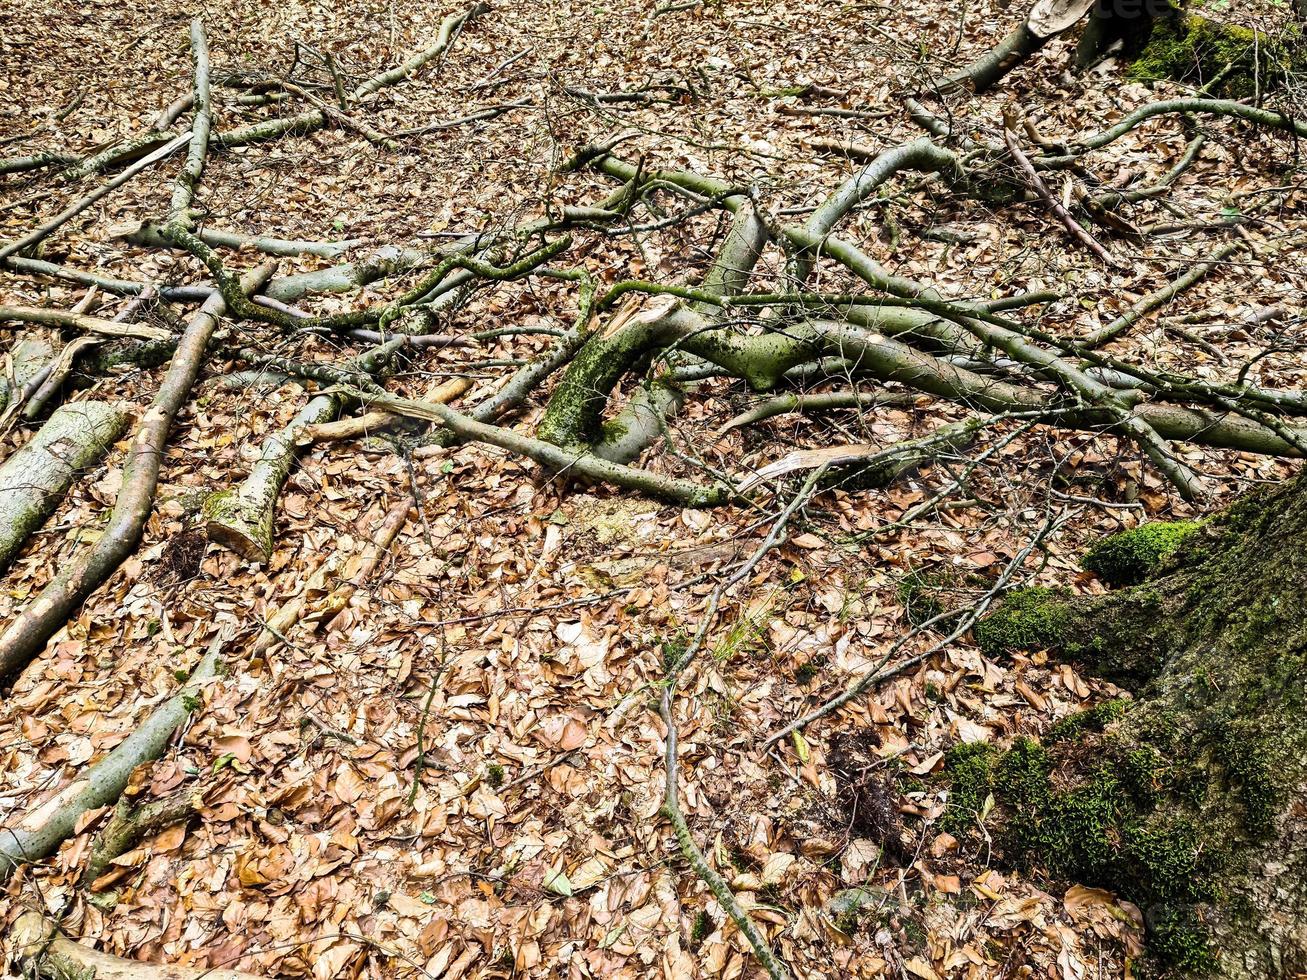 vue rapprochée détaillée sur une texture de sol forestier avec de la mousse et des branches photo